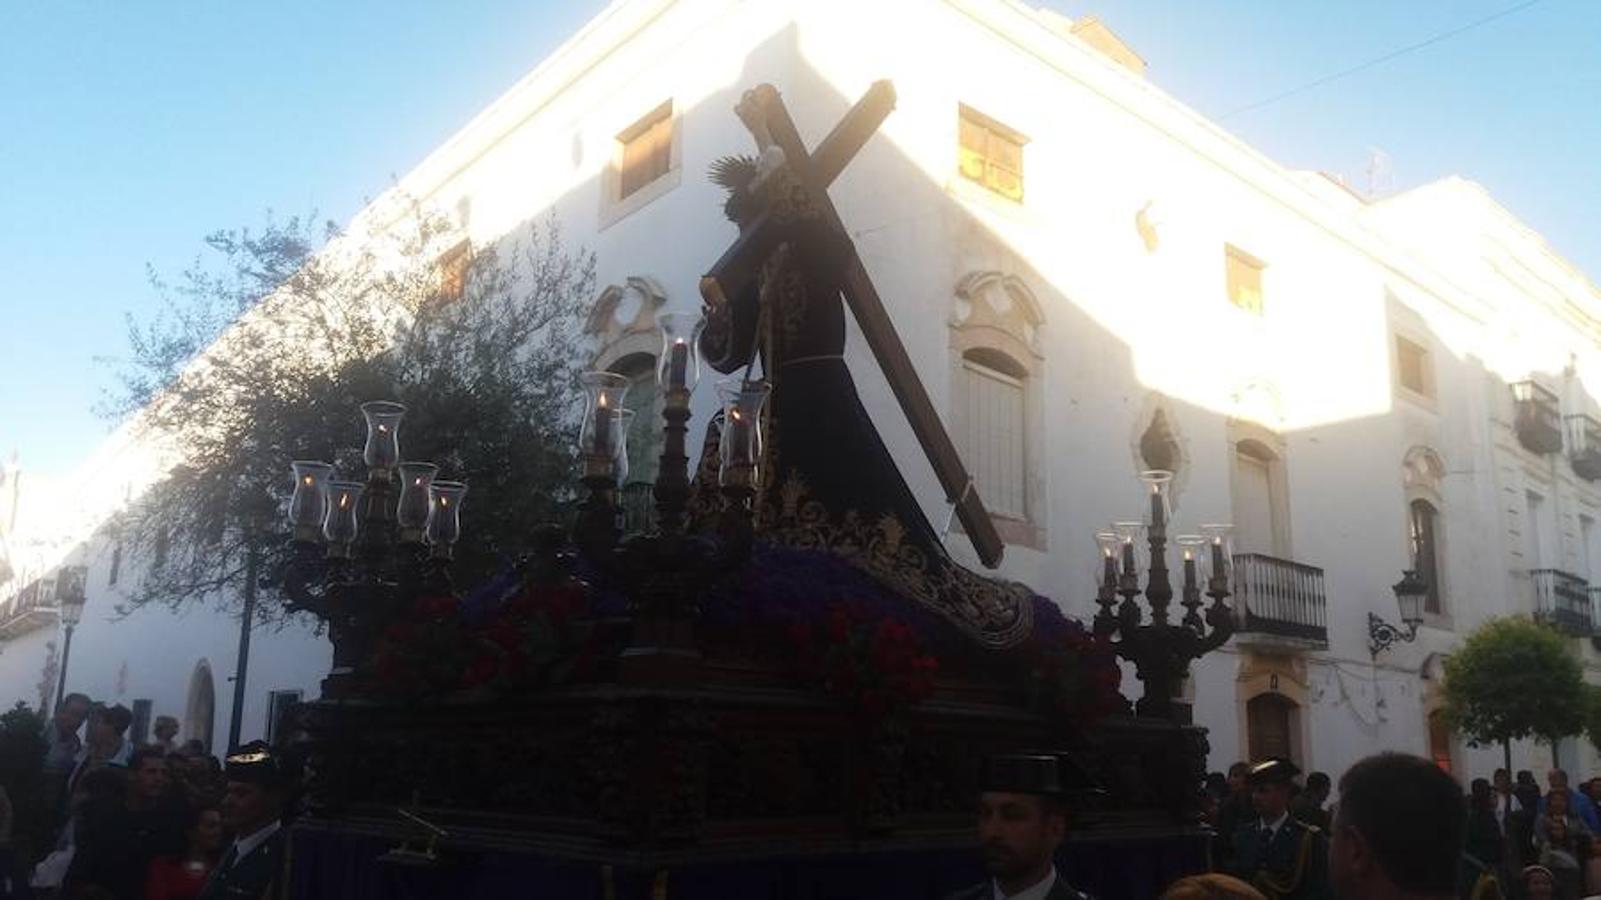 Olivenza festeja a su Patrón con la tradicional procesión de Nuestro Señor Jesús de los Pasos